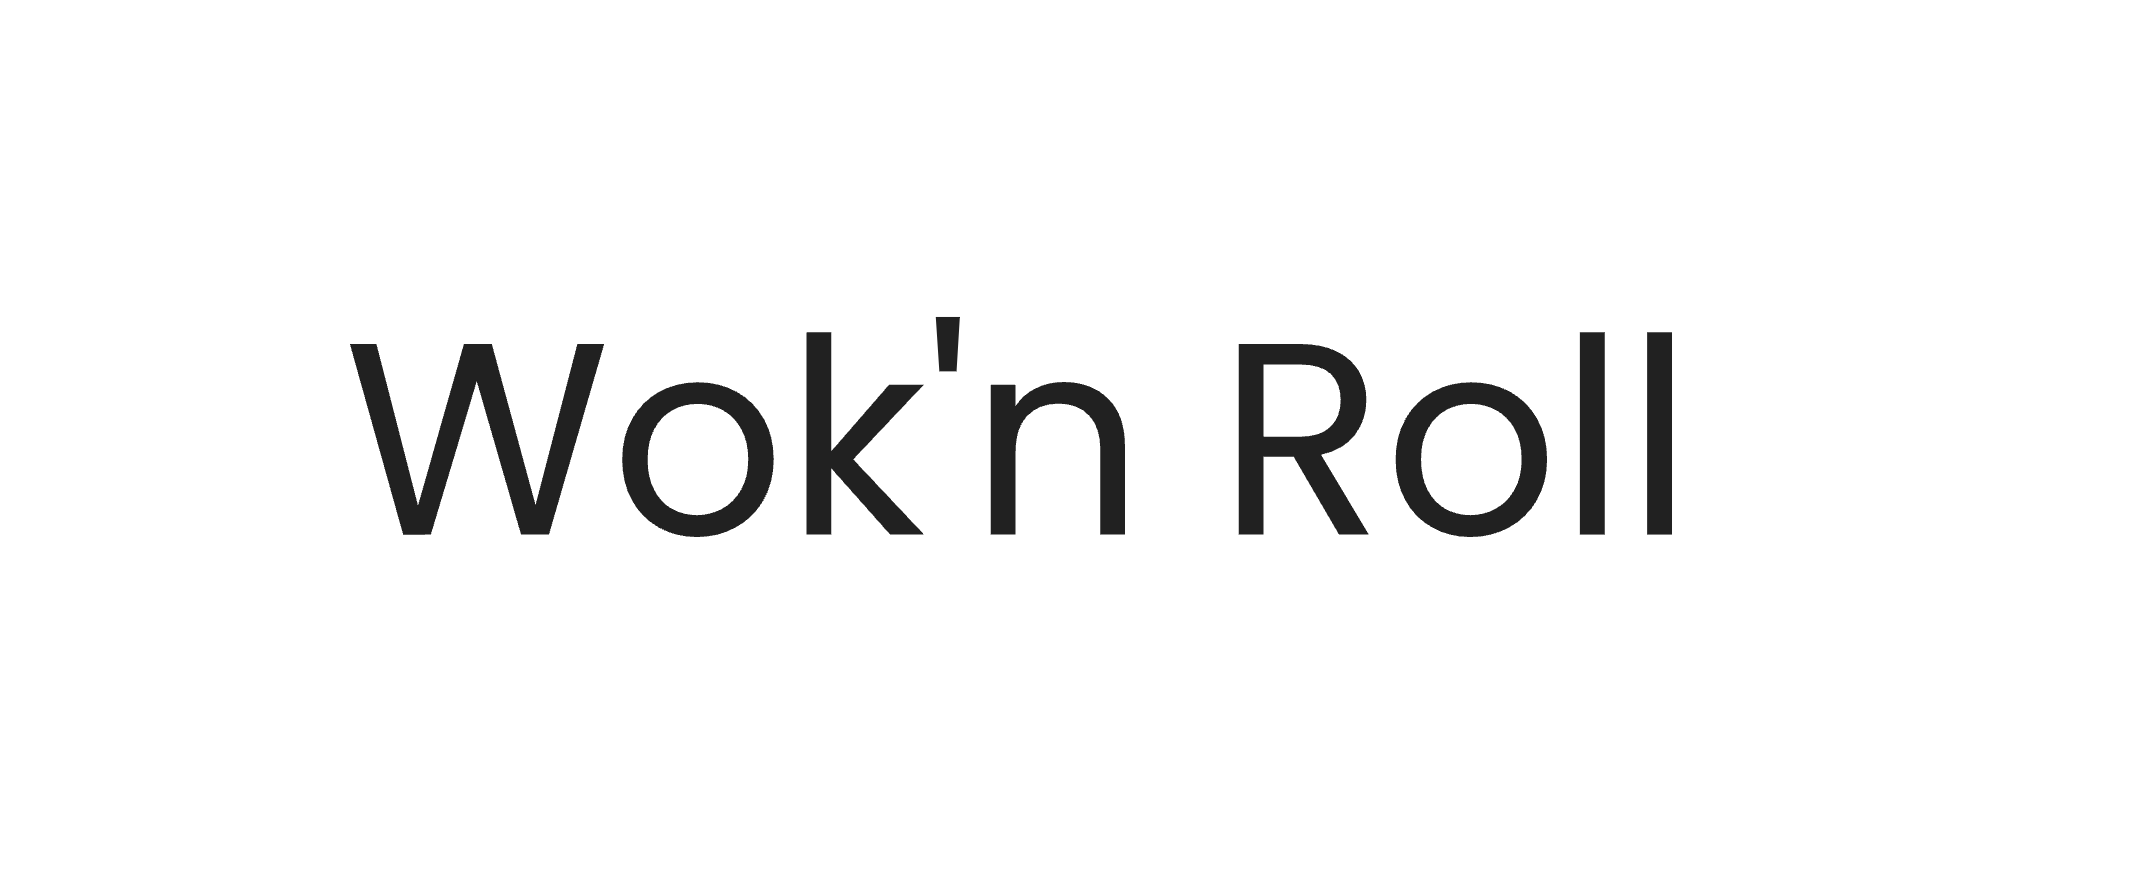 Un exemple de logo pour un site internet de restaurant.